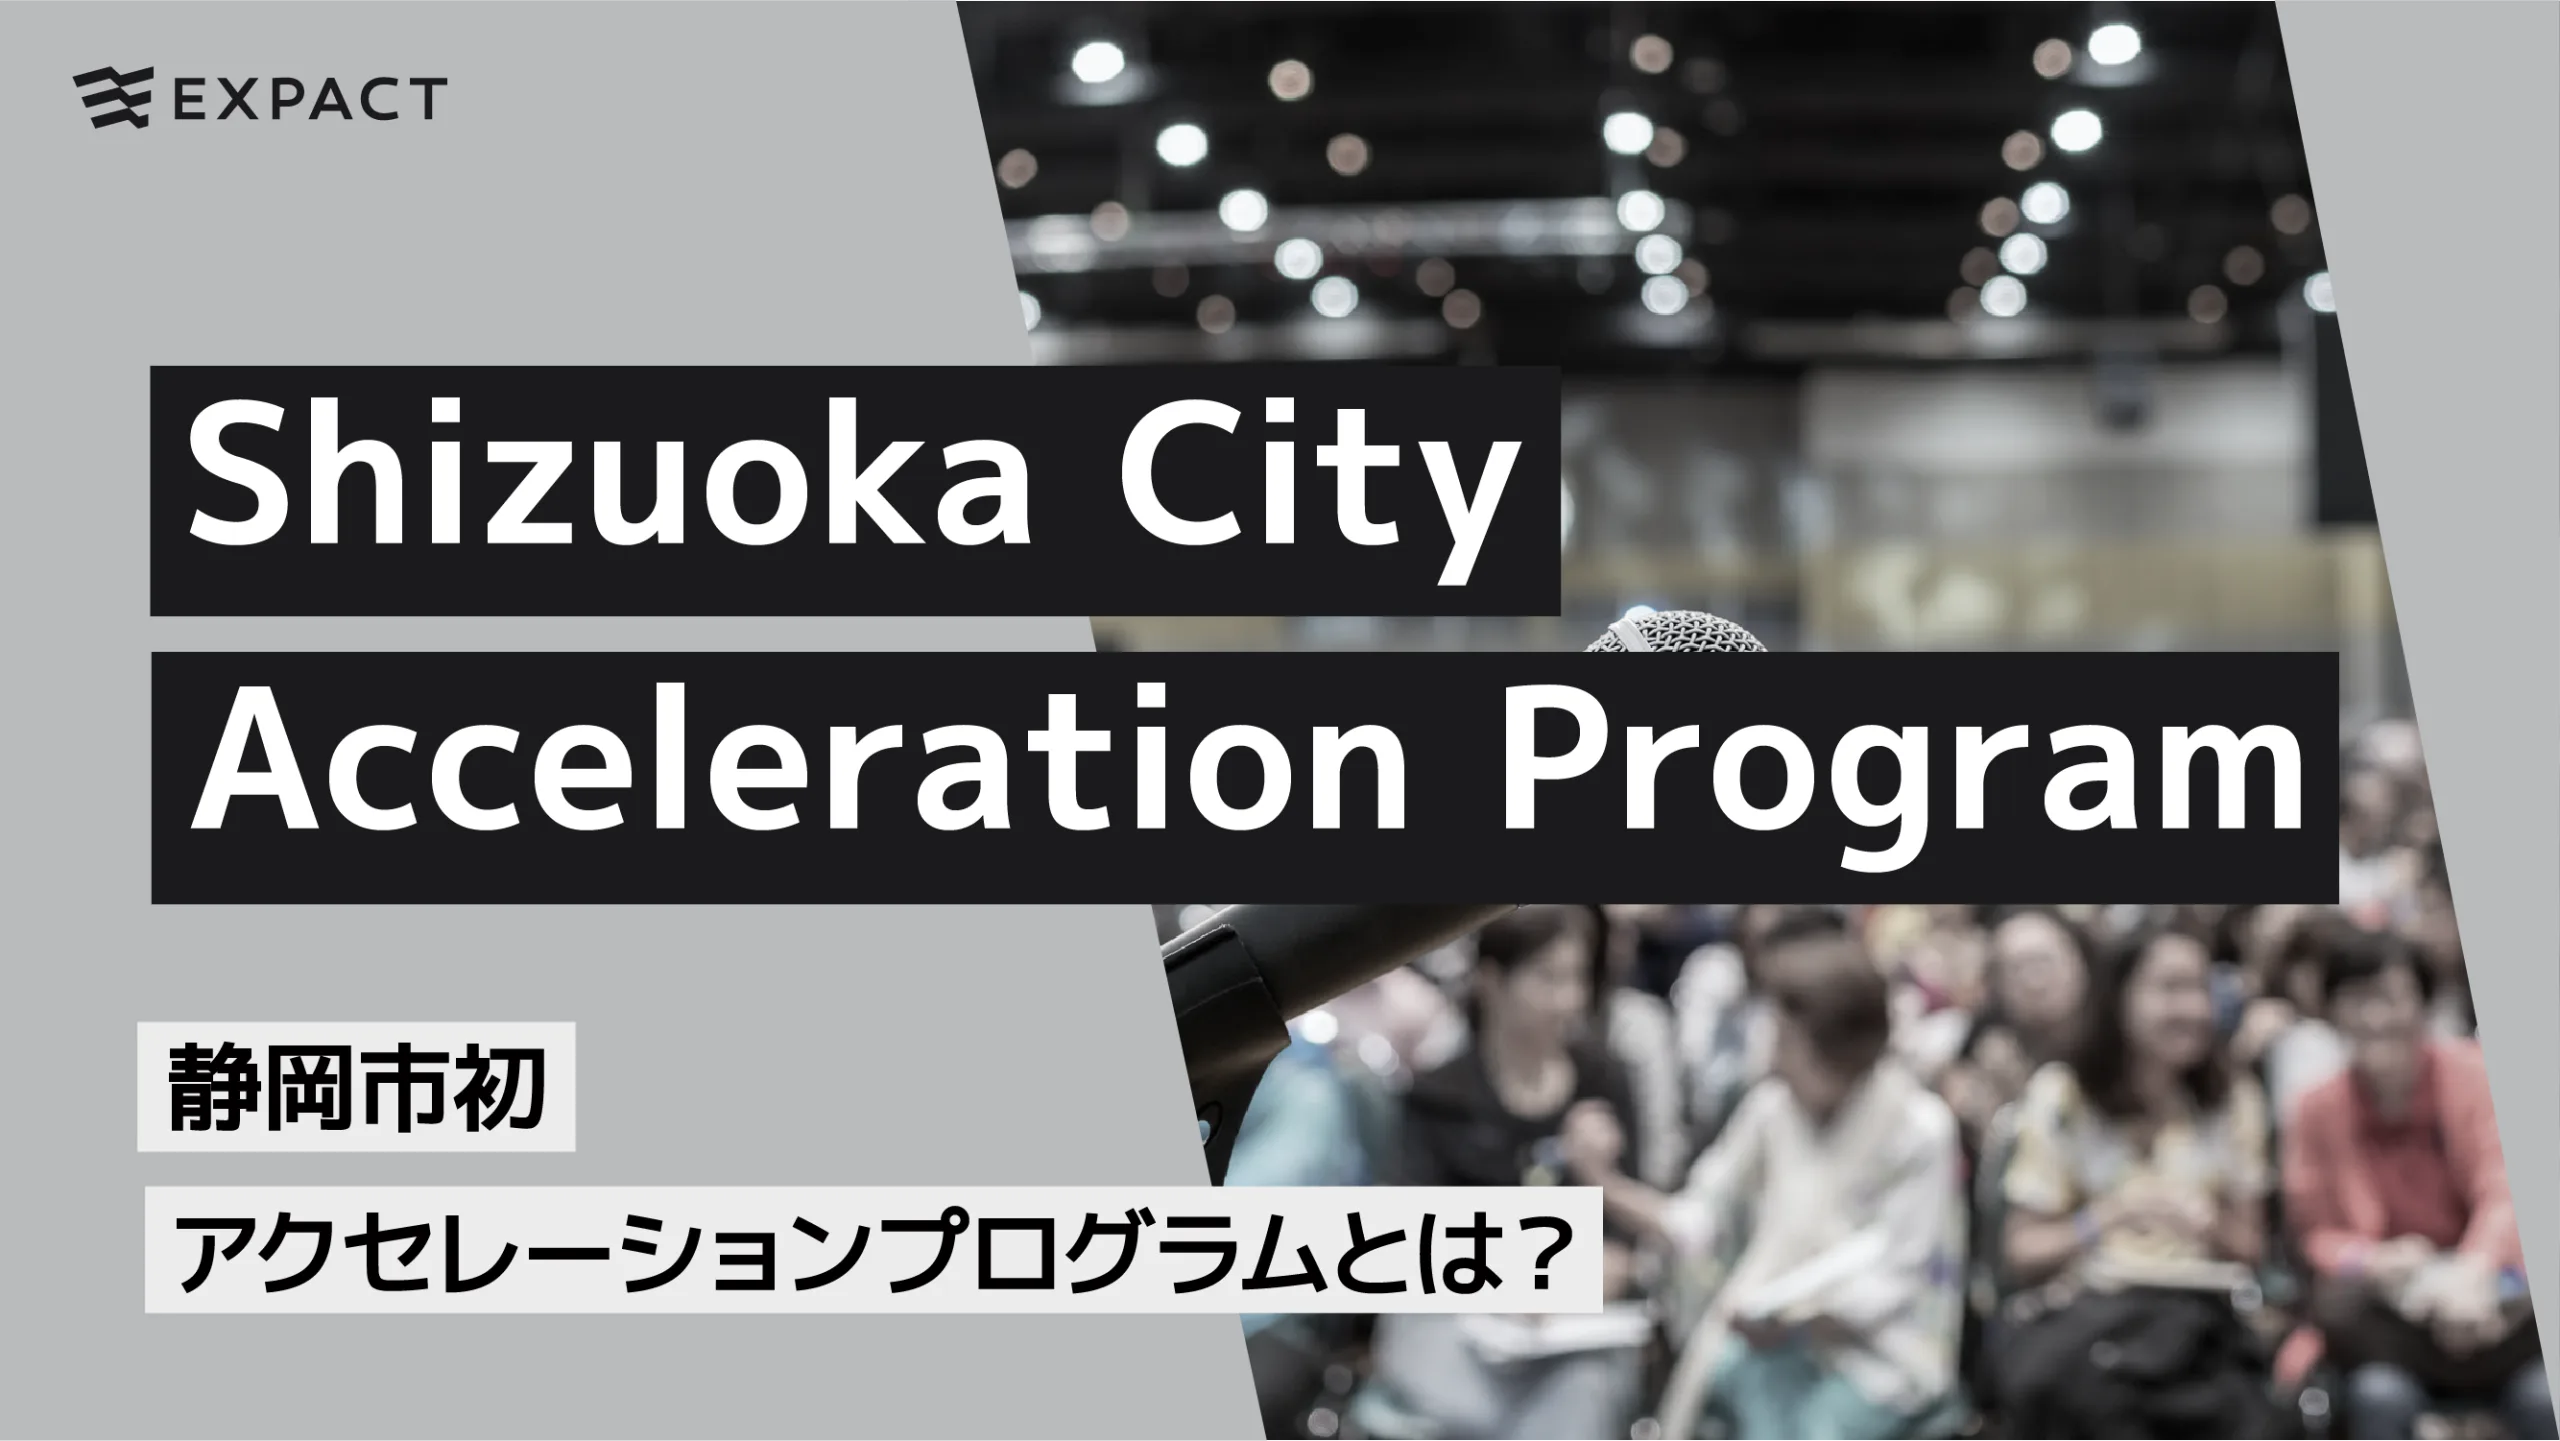 静岡市初アクセレーションプログラム”Shizuoka City Acceleration Program”とは？